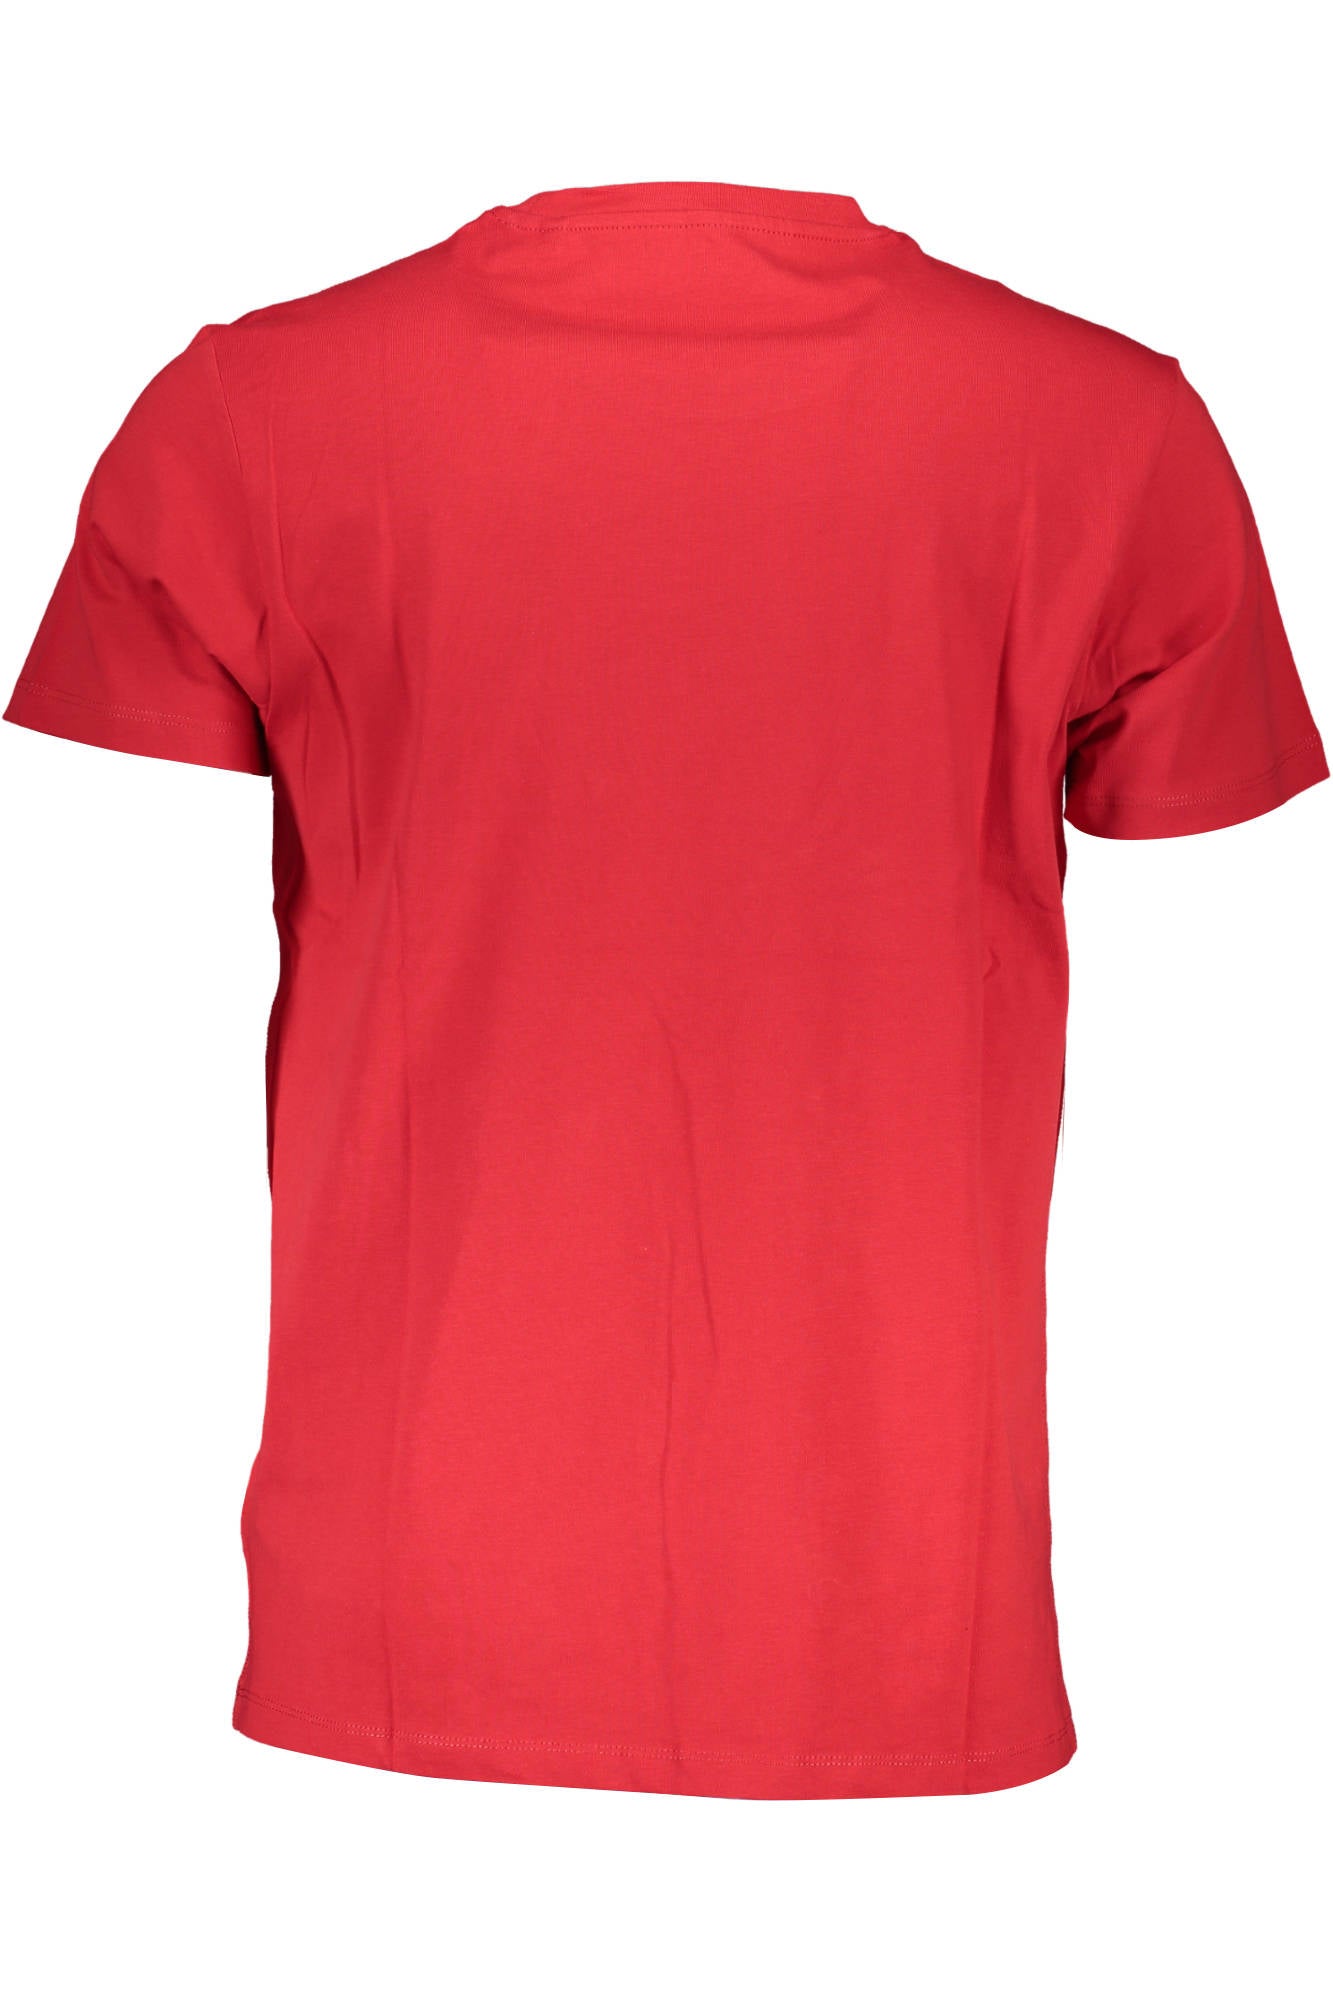 Guess Jeans Red Cotton T-Shirt - Fizigo